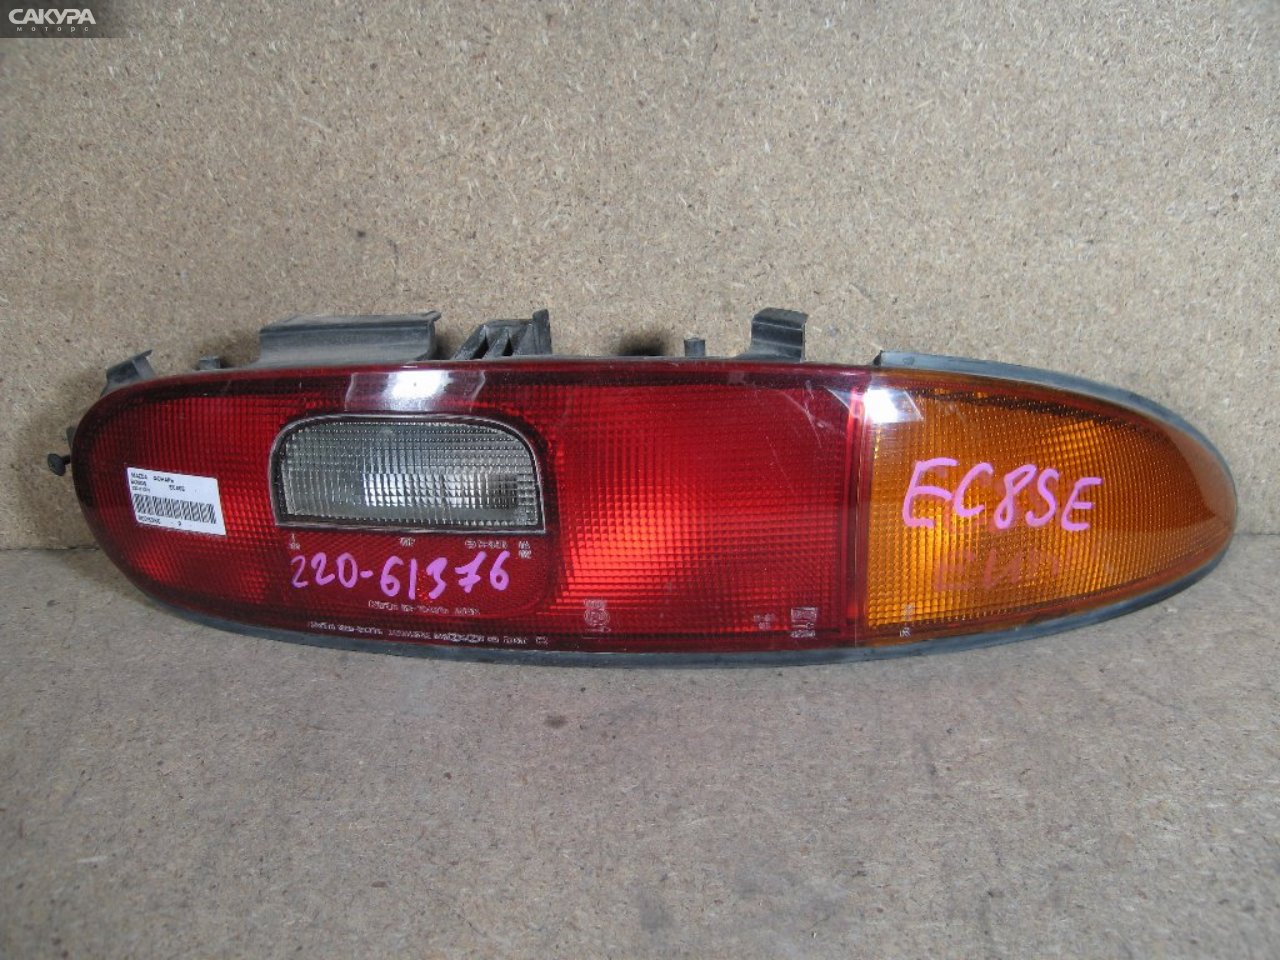 Фонарь стоп-сигнала правый Mazda Eunos Presso EC8SE 220-61376: купить в Сакура Абакан.